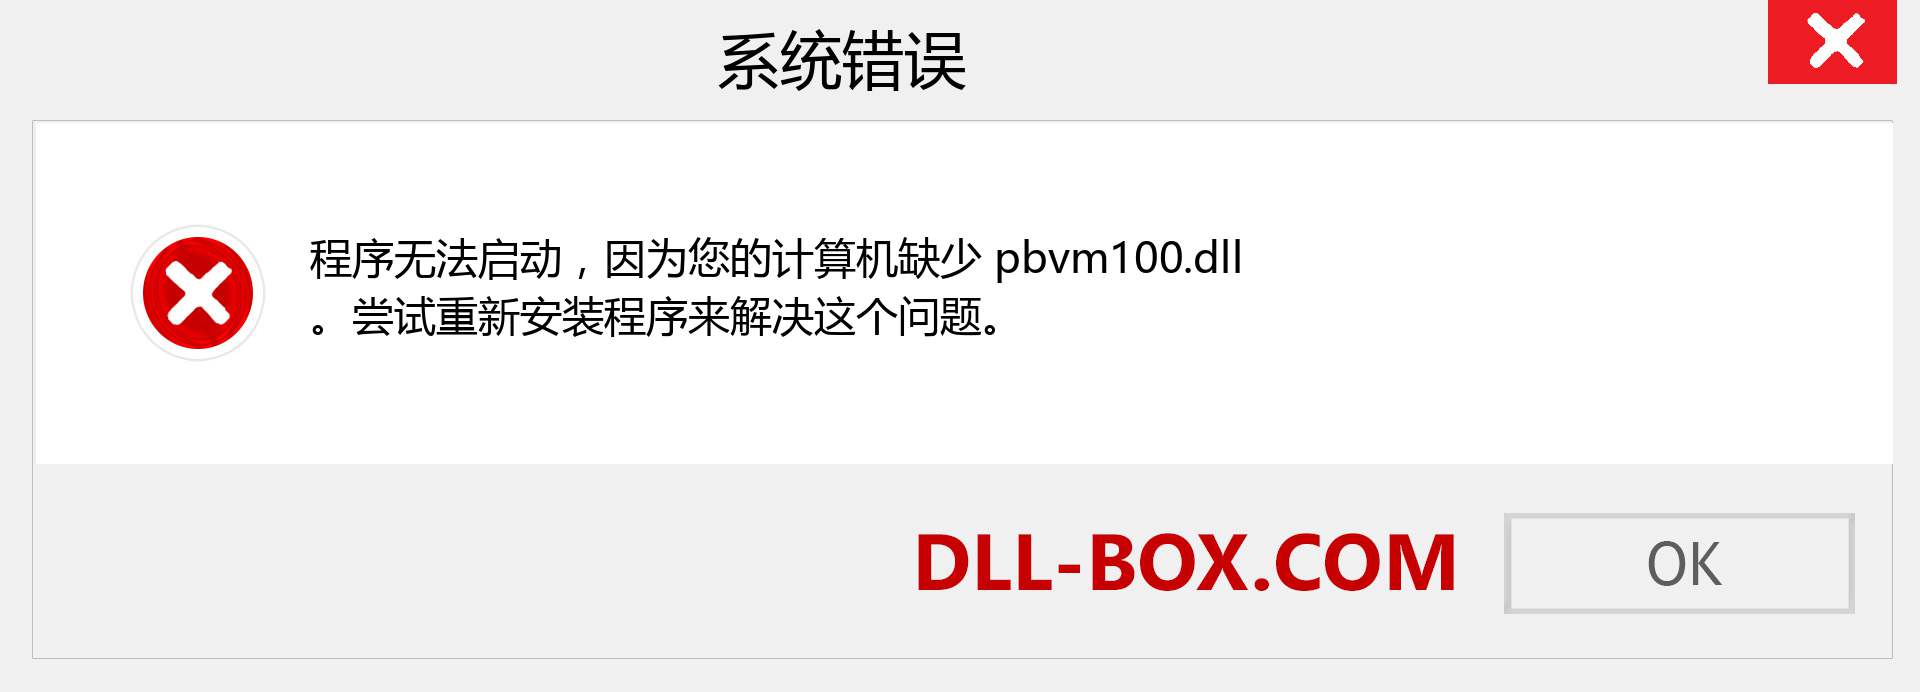 pbvm100.dll 文件丢失？。 适用于 Windows 7、8、10 的下载 - 修复 Windows、照片、图像上的 pbvm100 dll 丢失错误